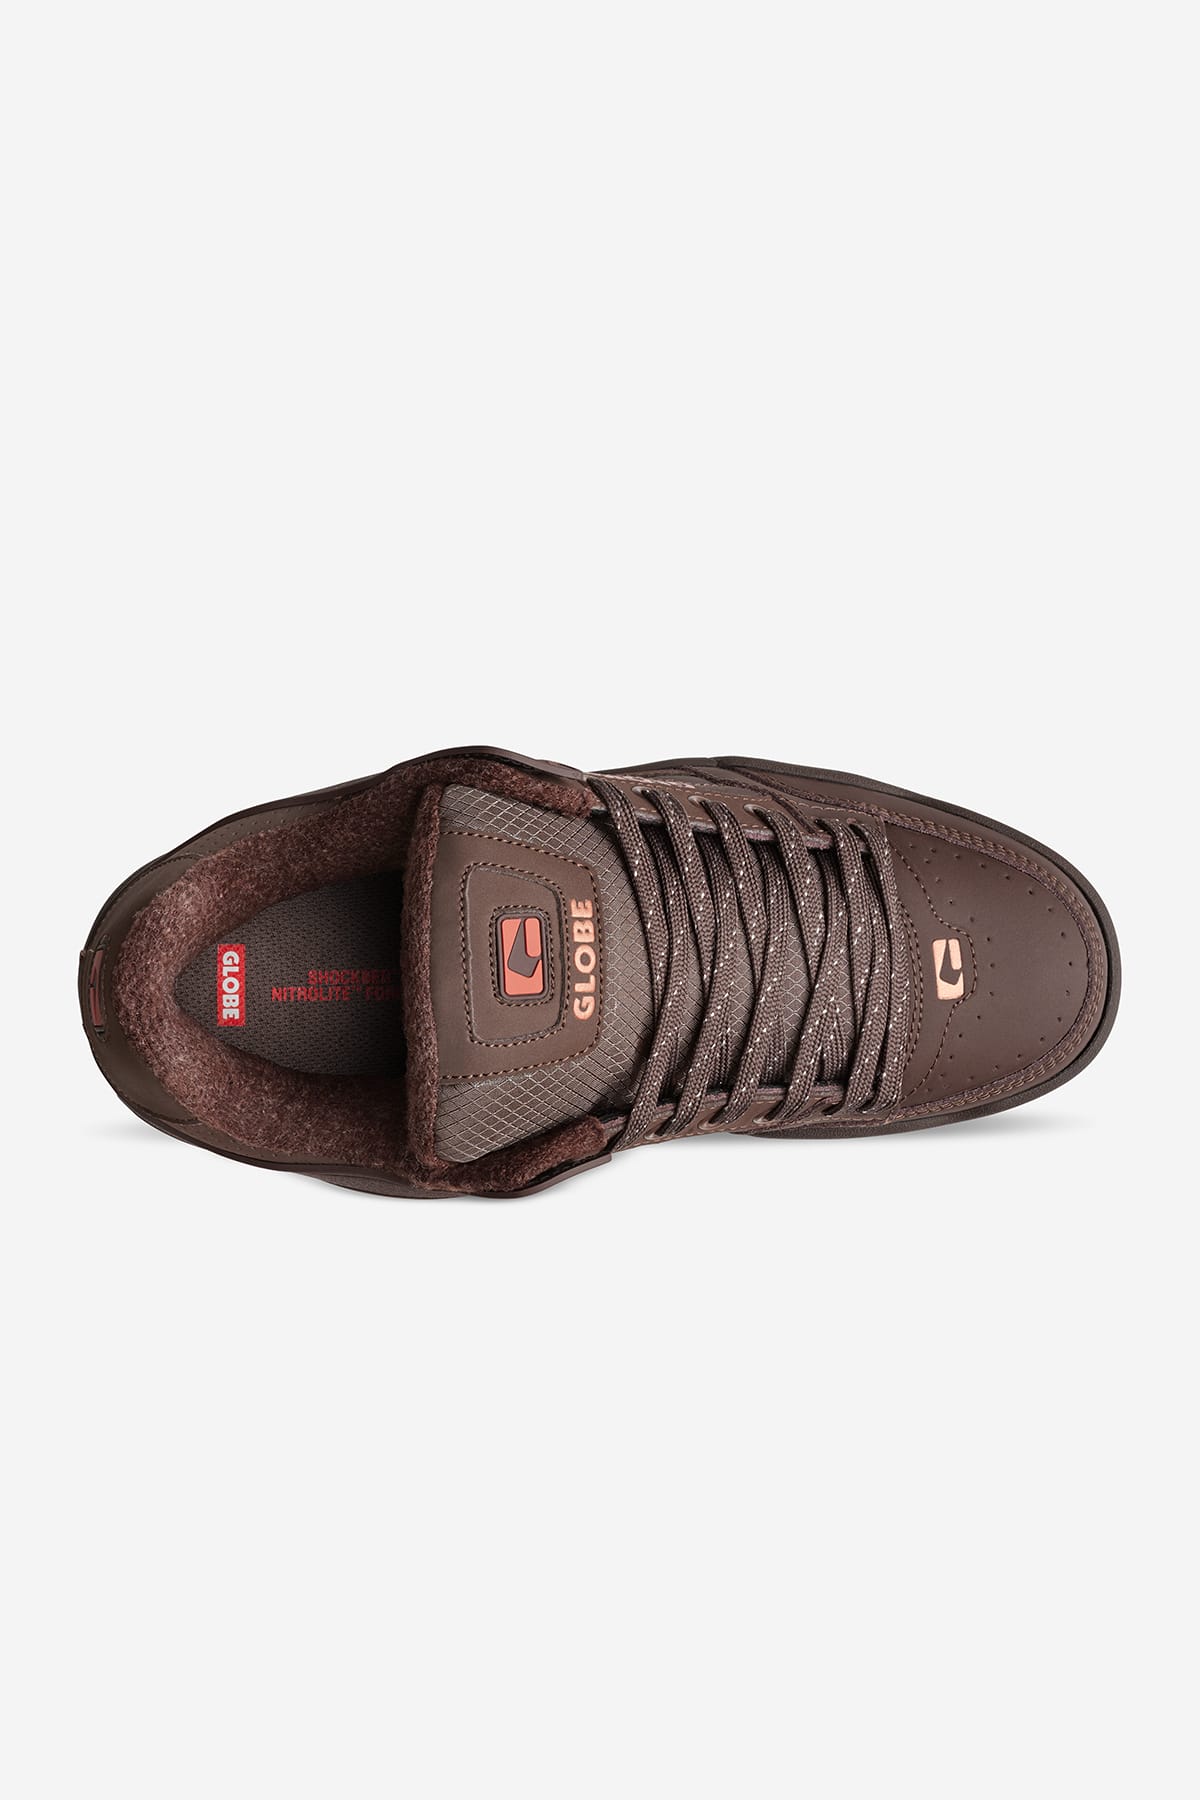 tilt dark oak bronze skate shoes